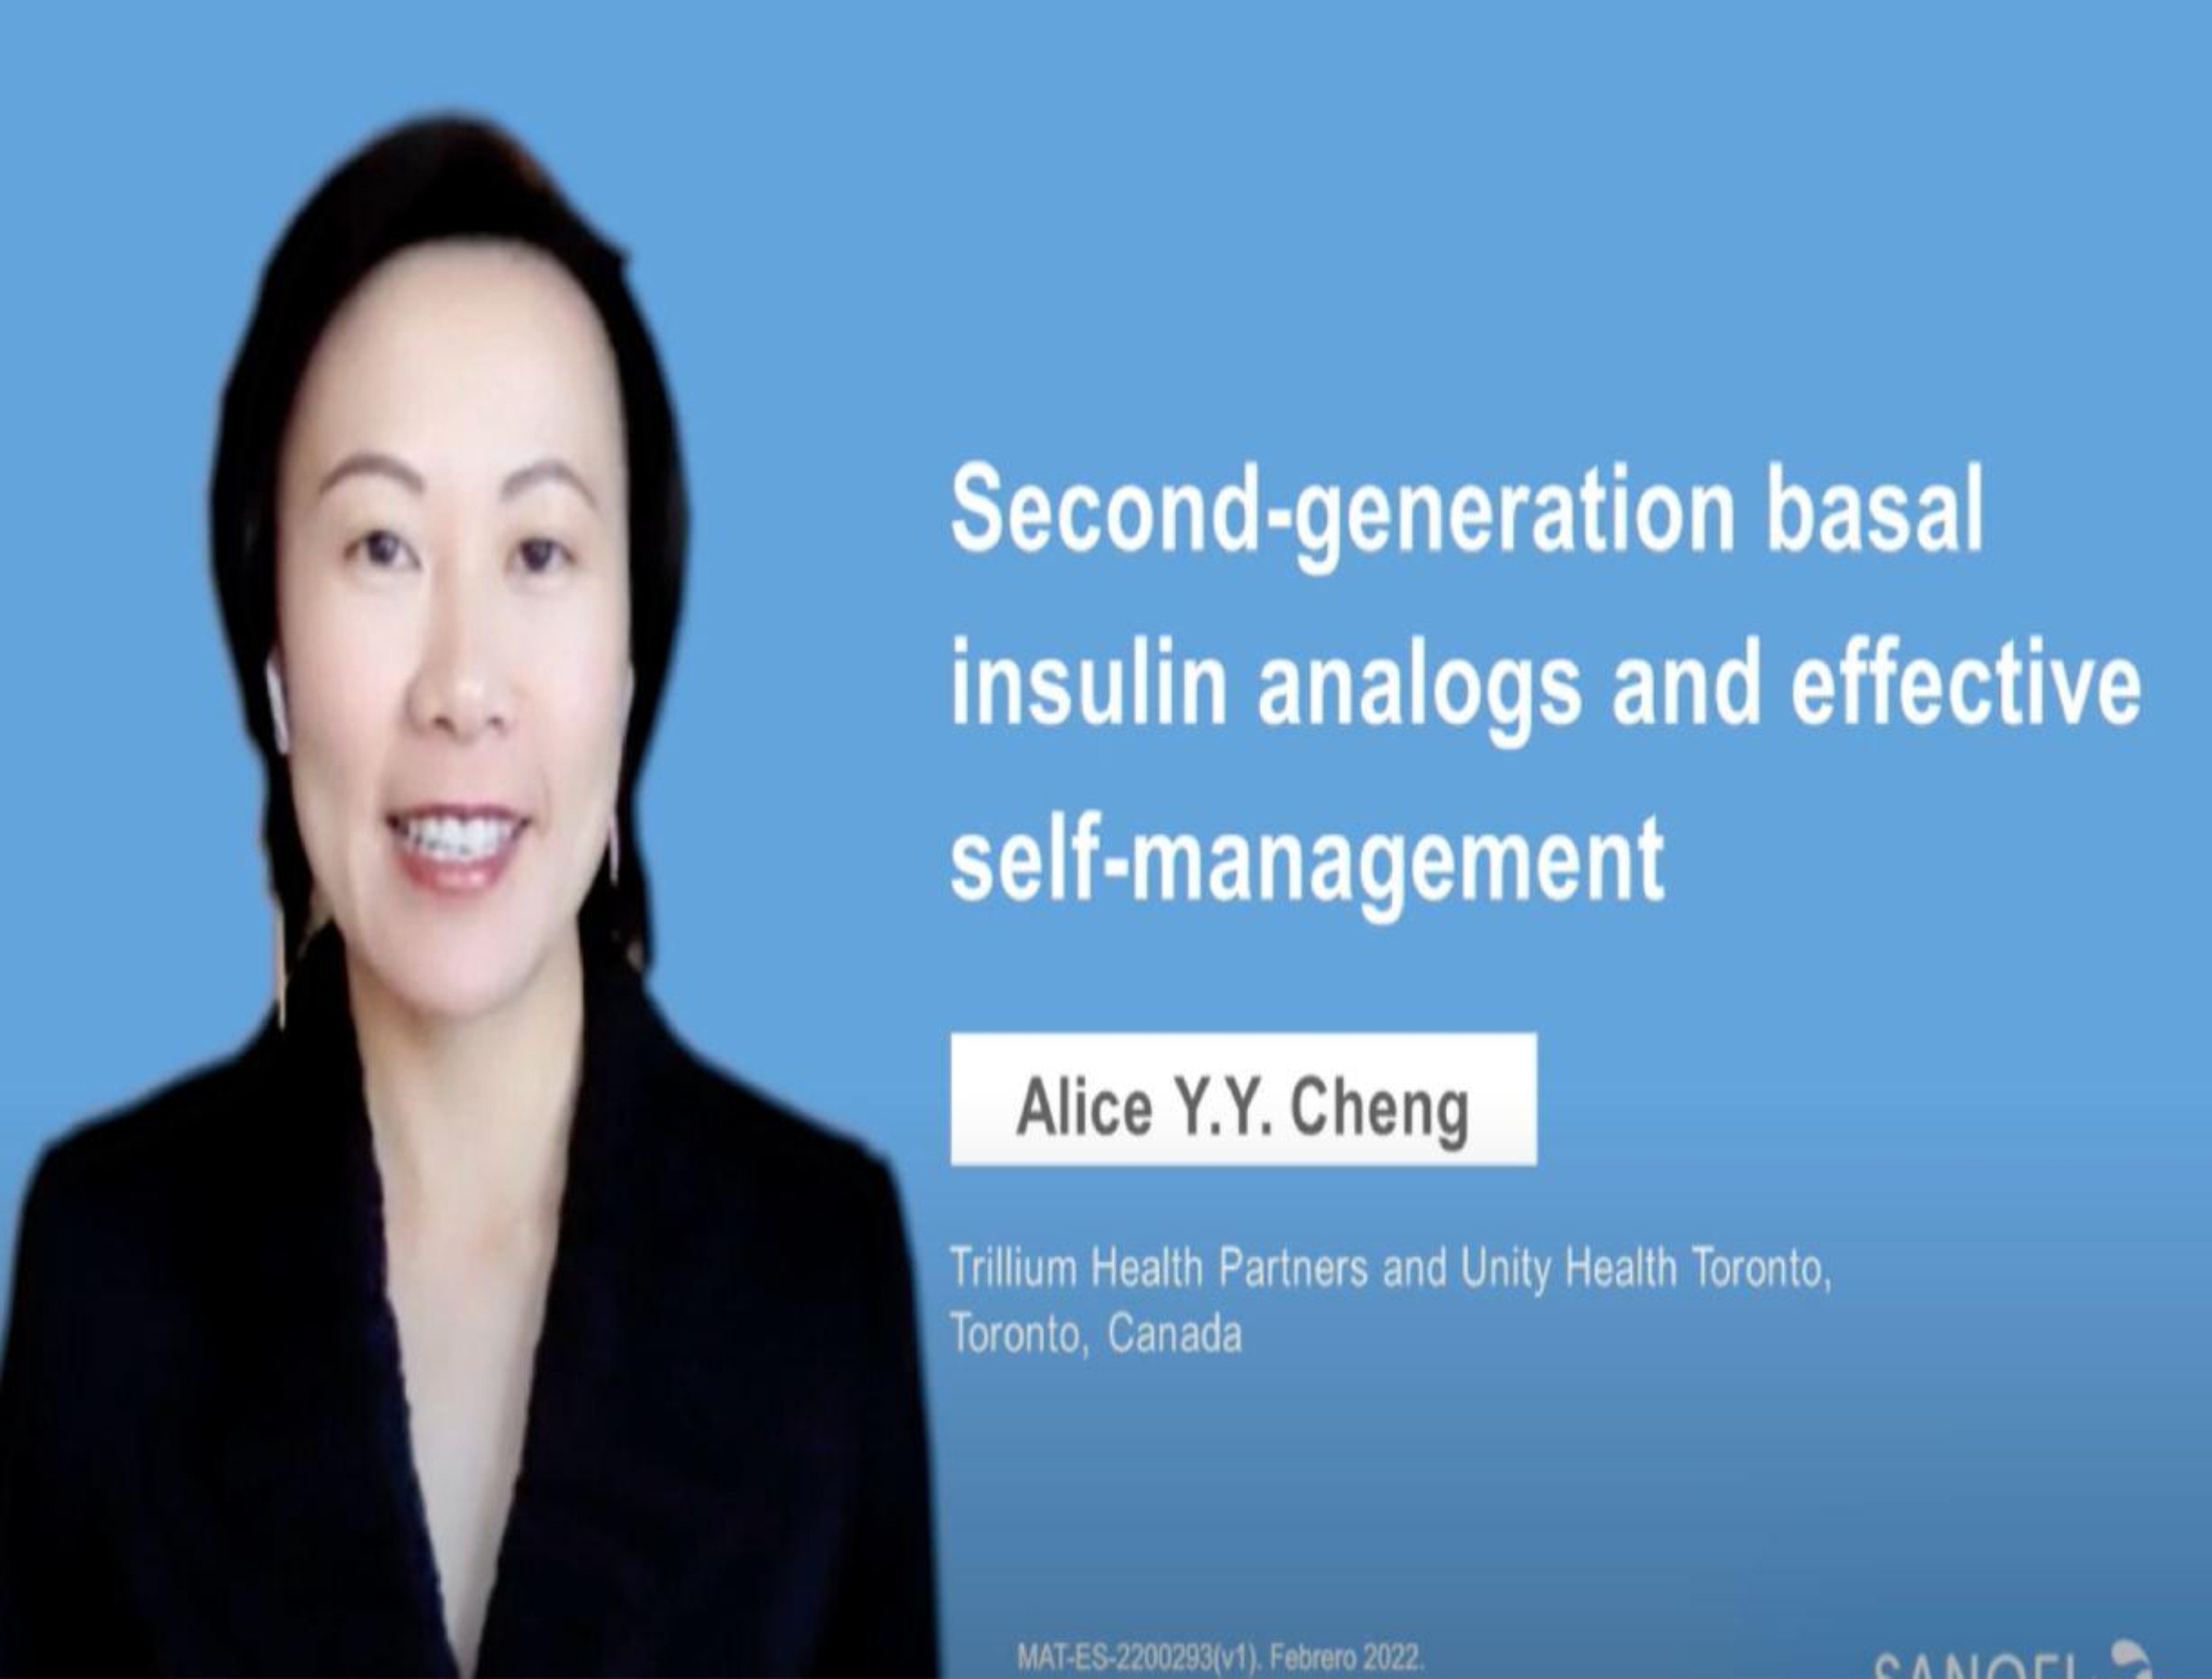 Entrevista a la Dra. Alice Y.Y. Cheng sobre la insulina basal